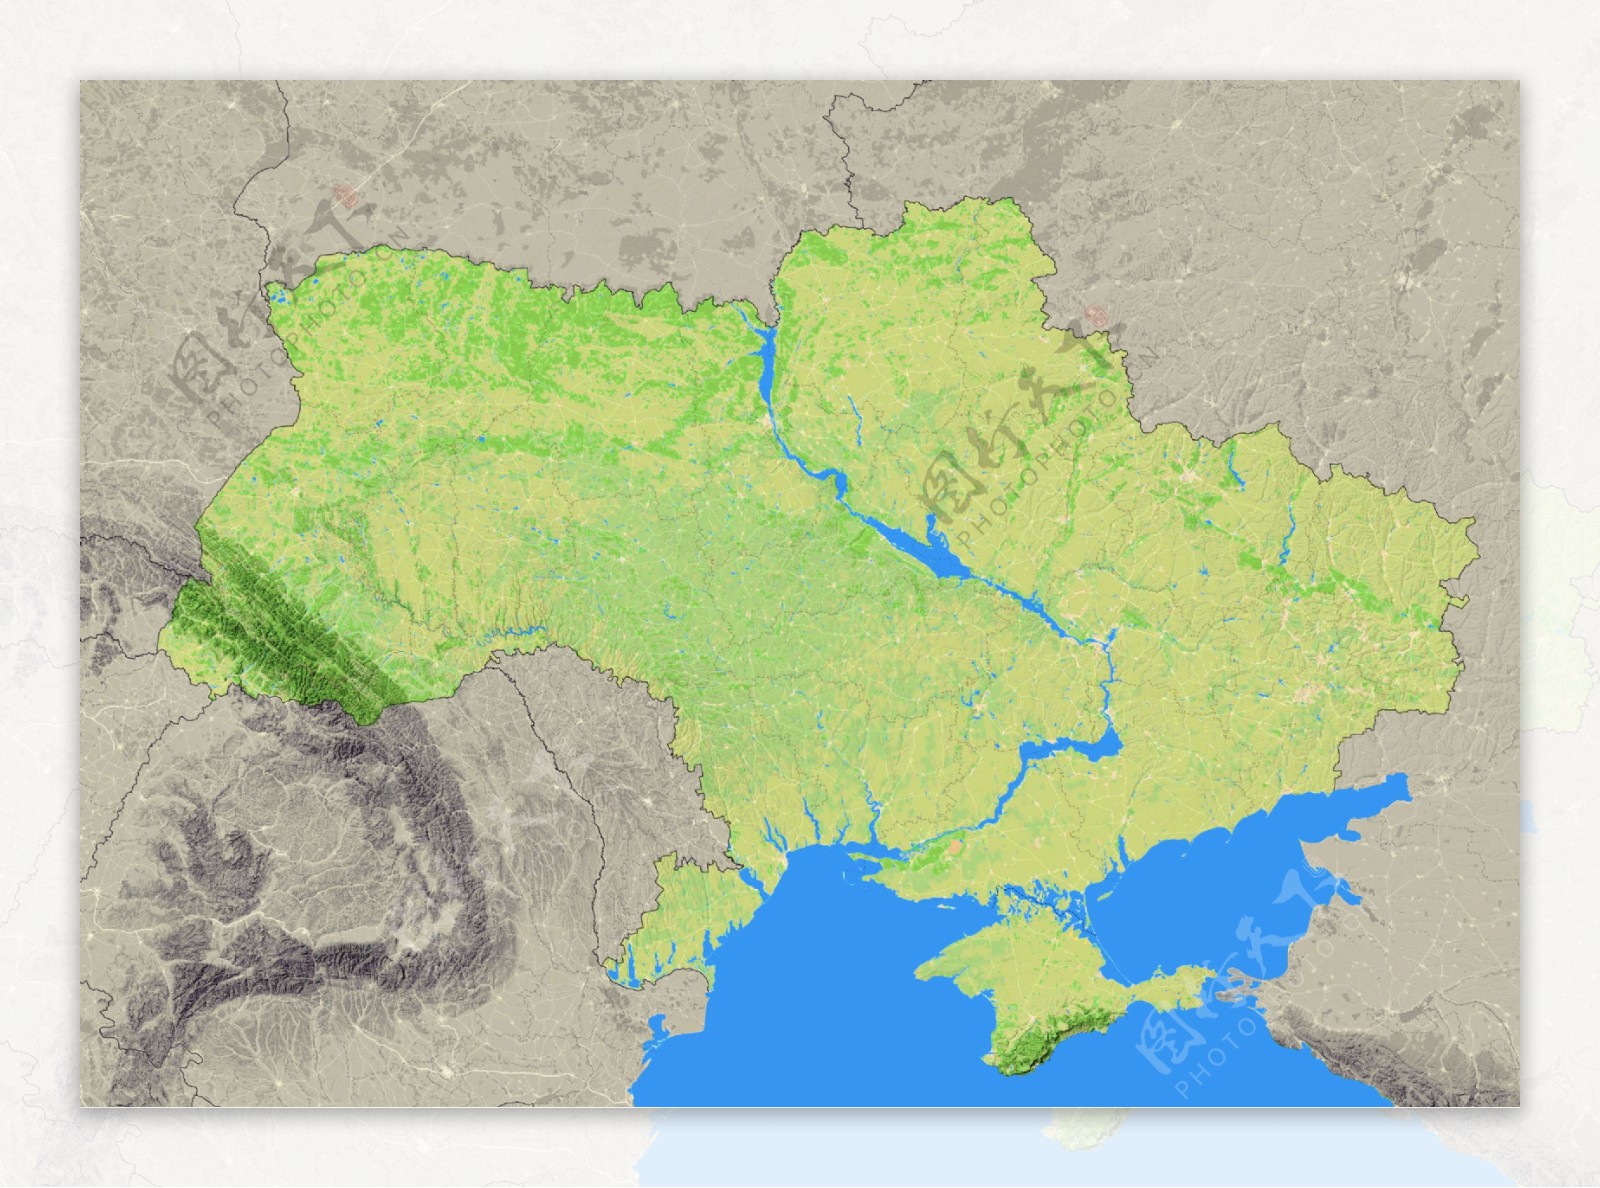 乌克兰地形图